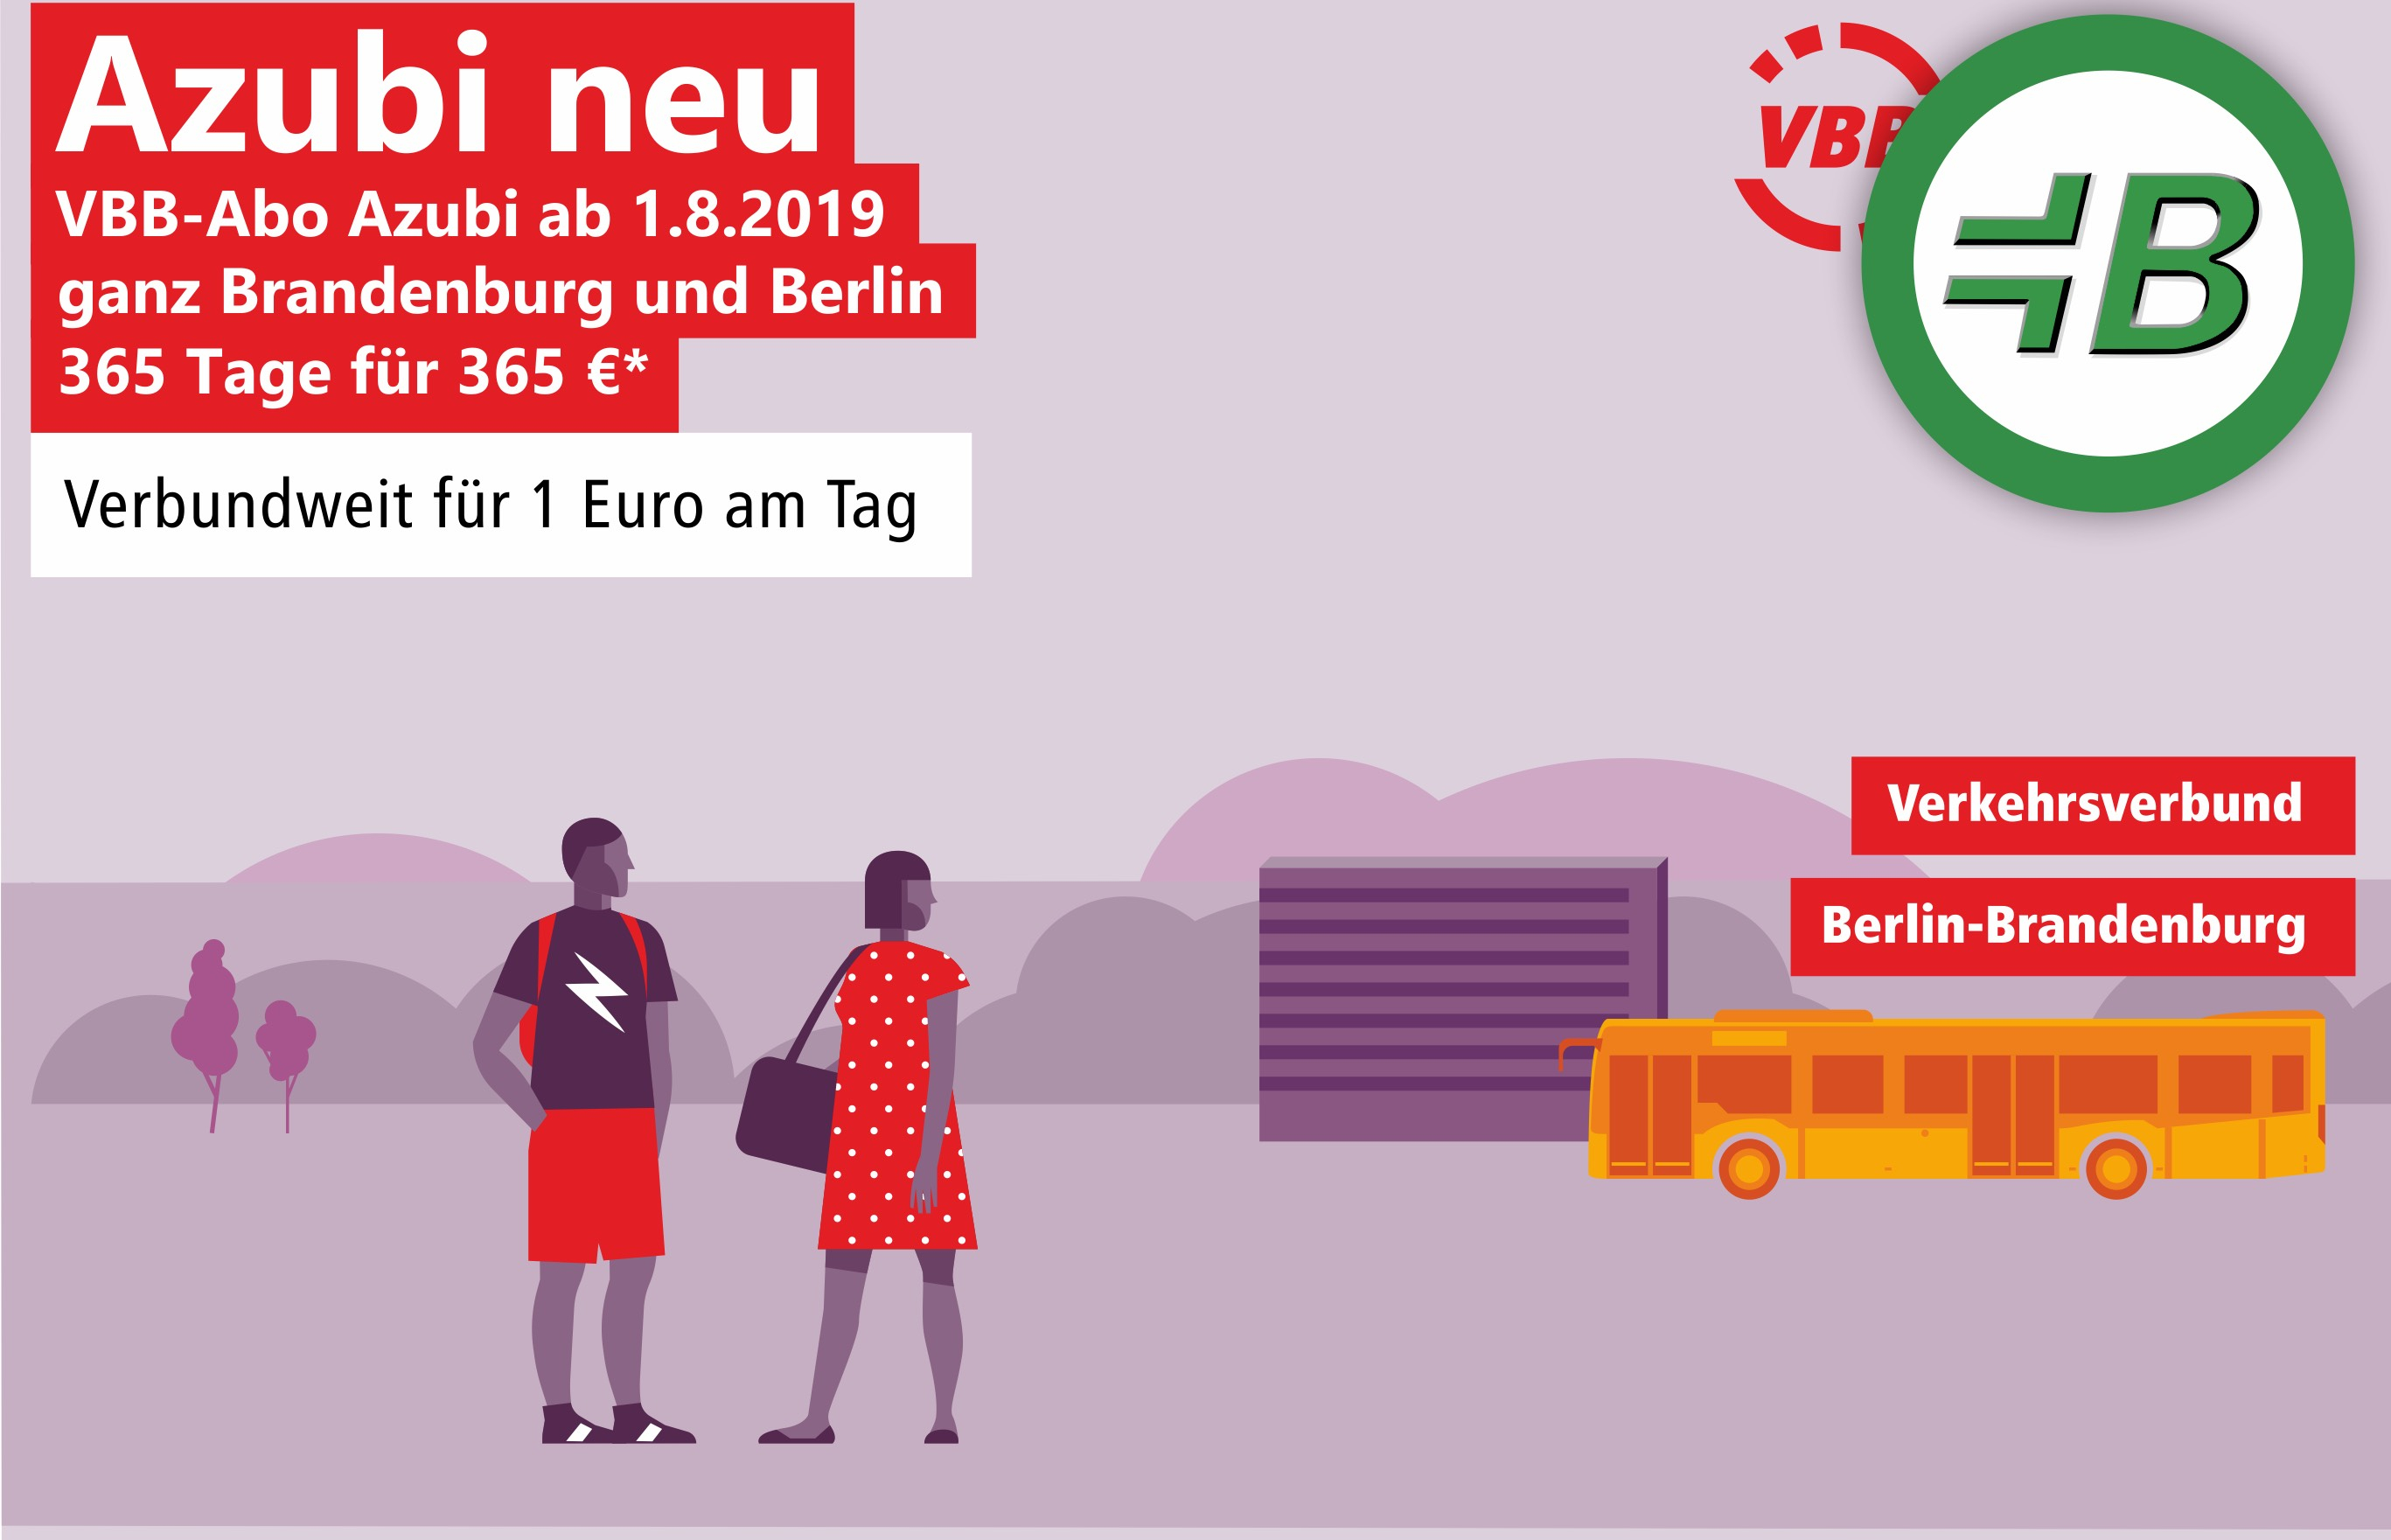 Berlin-brandenburg-ticket für single preis